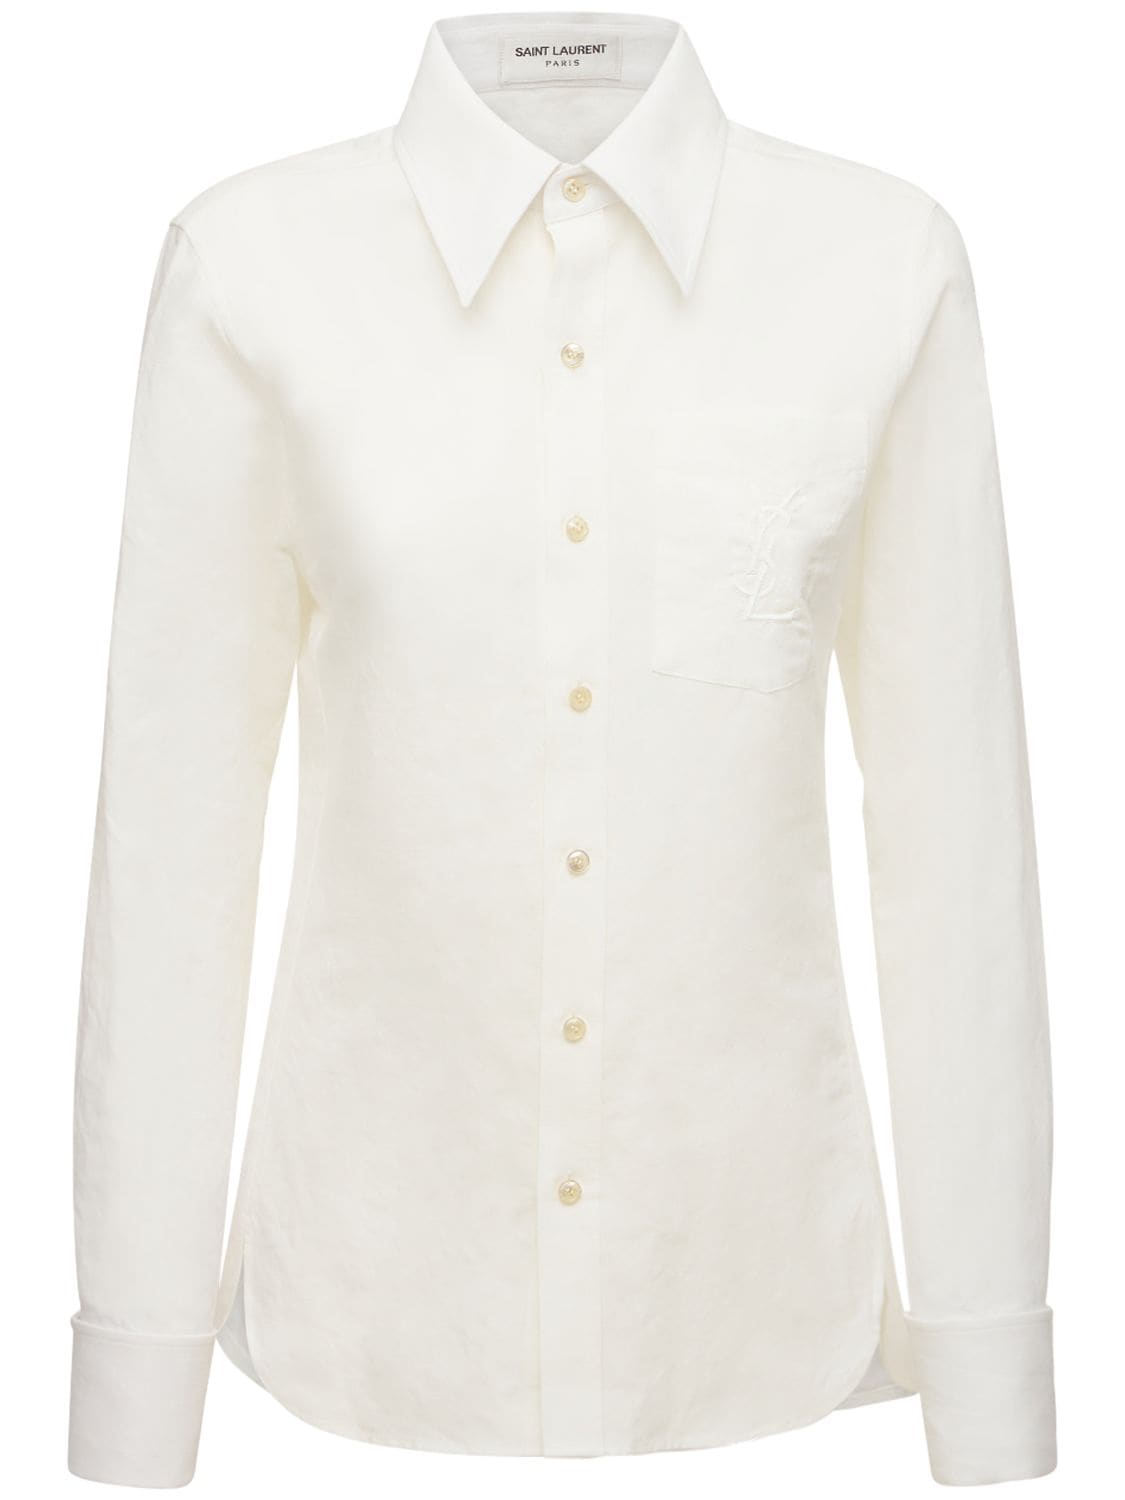 Saint Laurent Classic Cotton & Linen Shirt In Craie